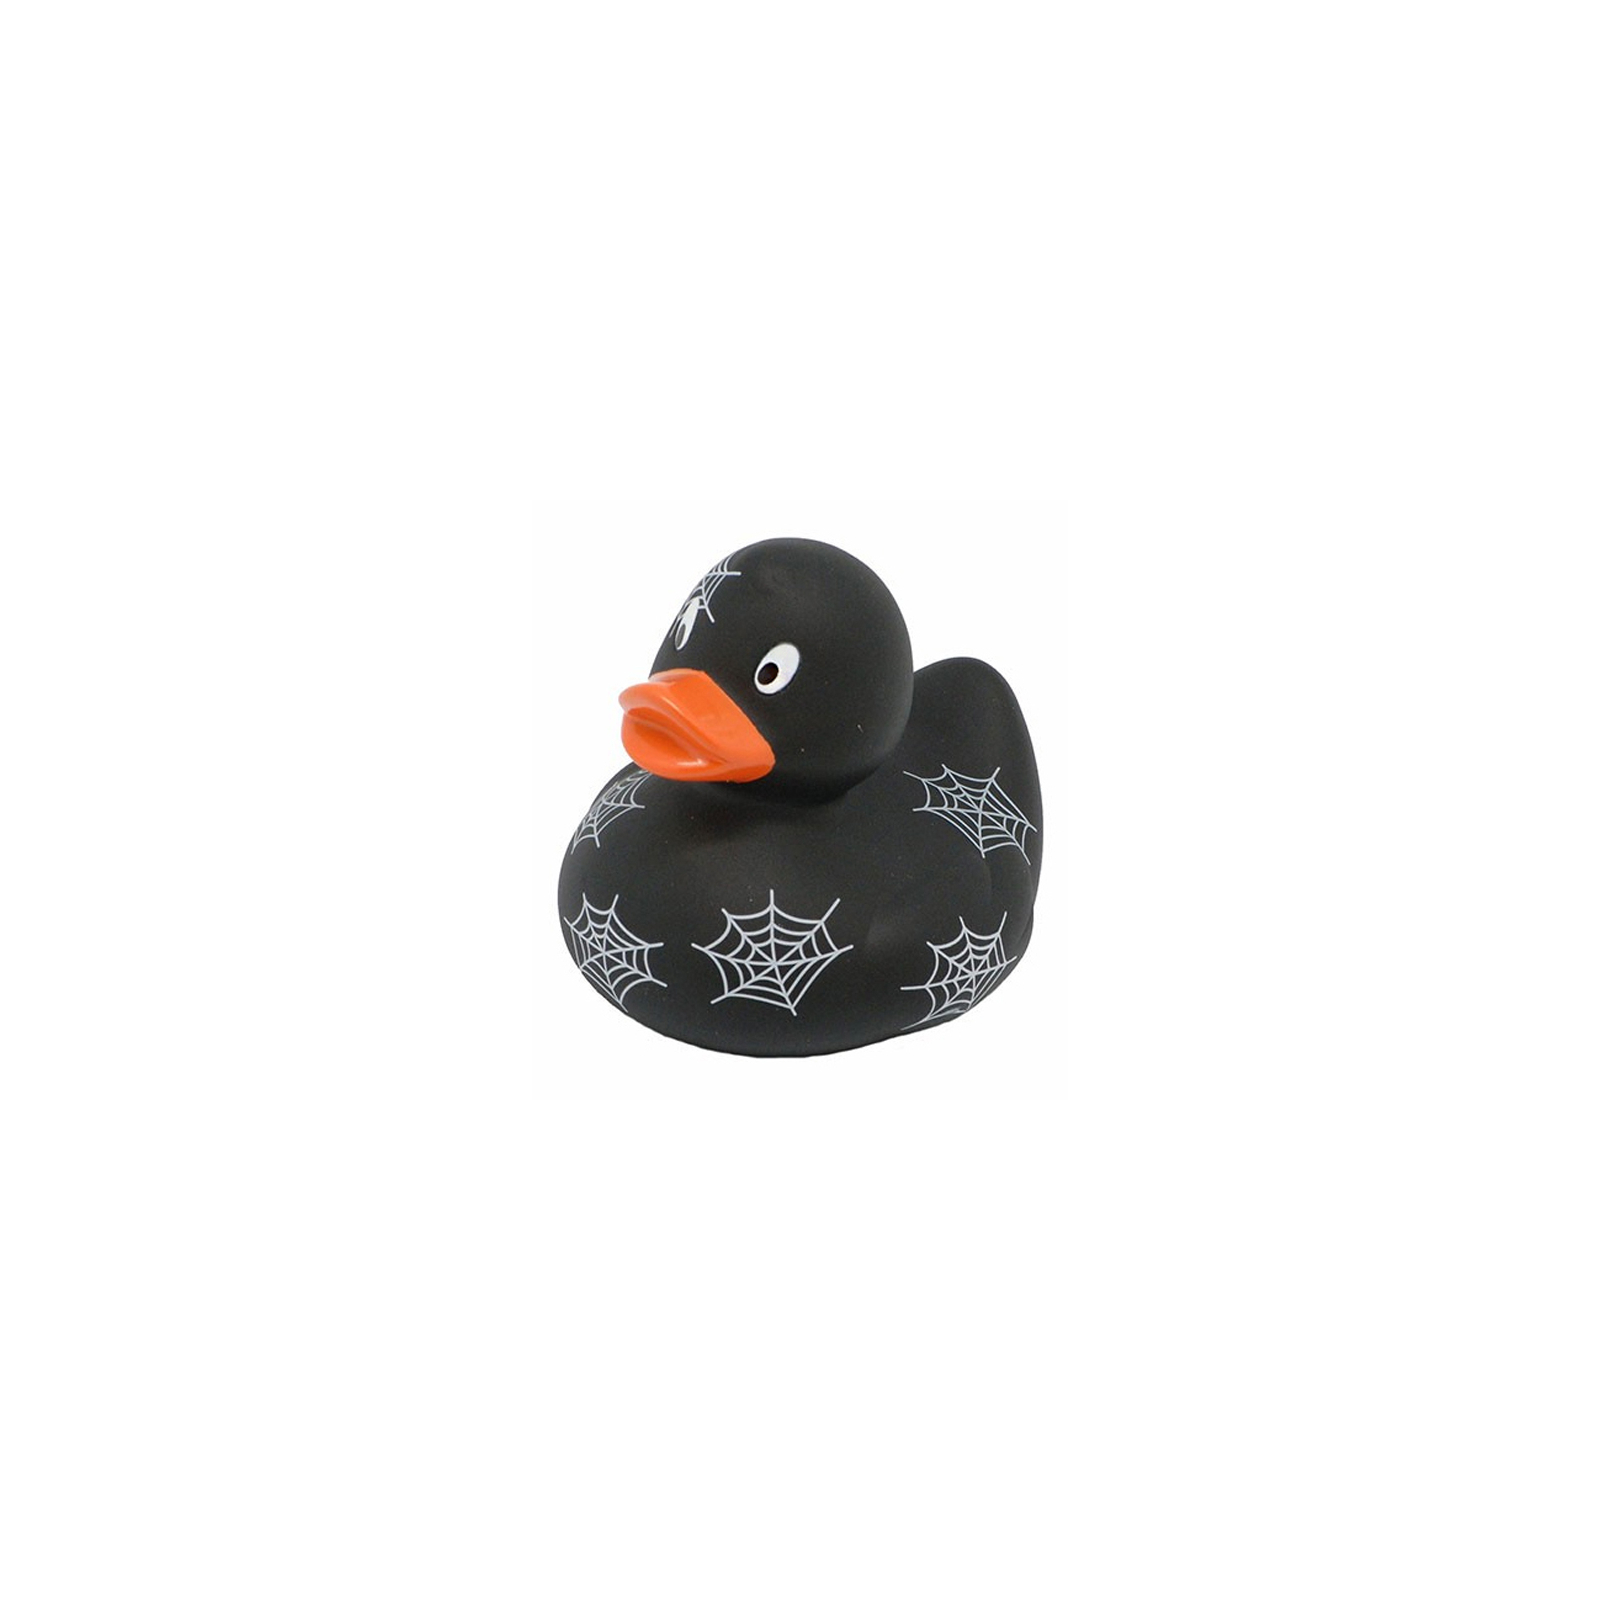 Іграшка для ванної Funny Ducks Паутинка утка (L1153)